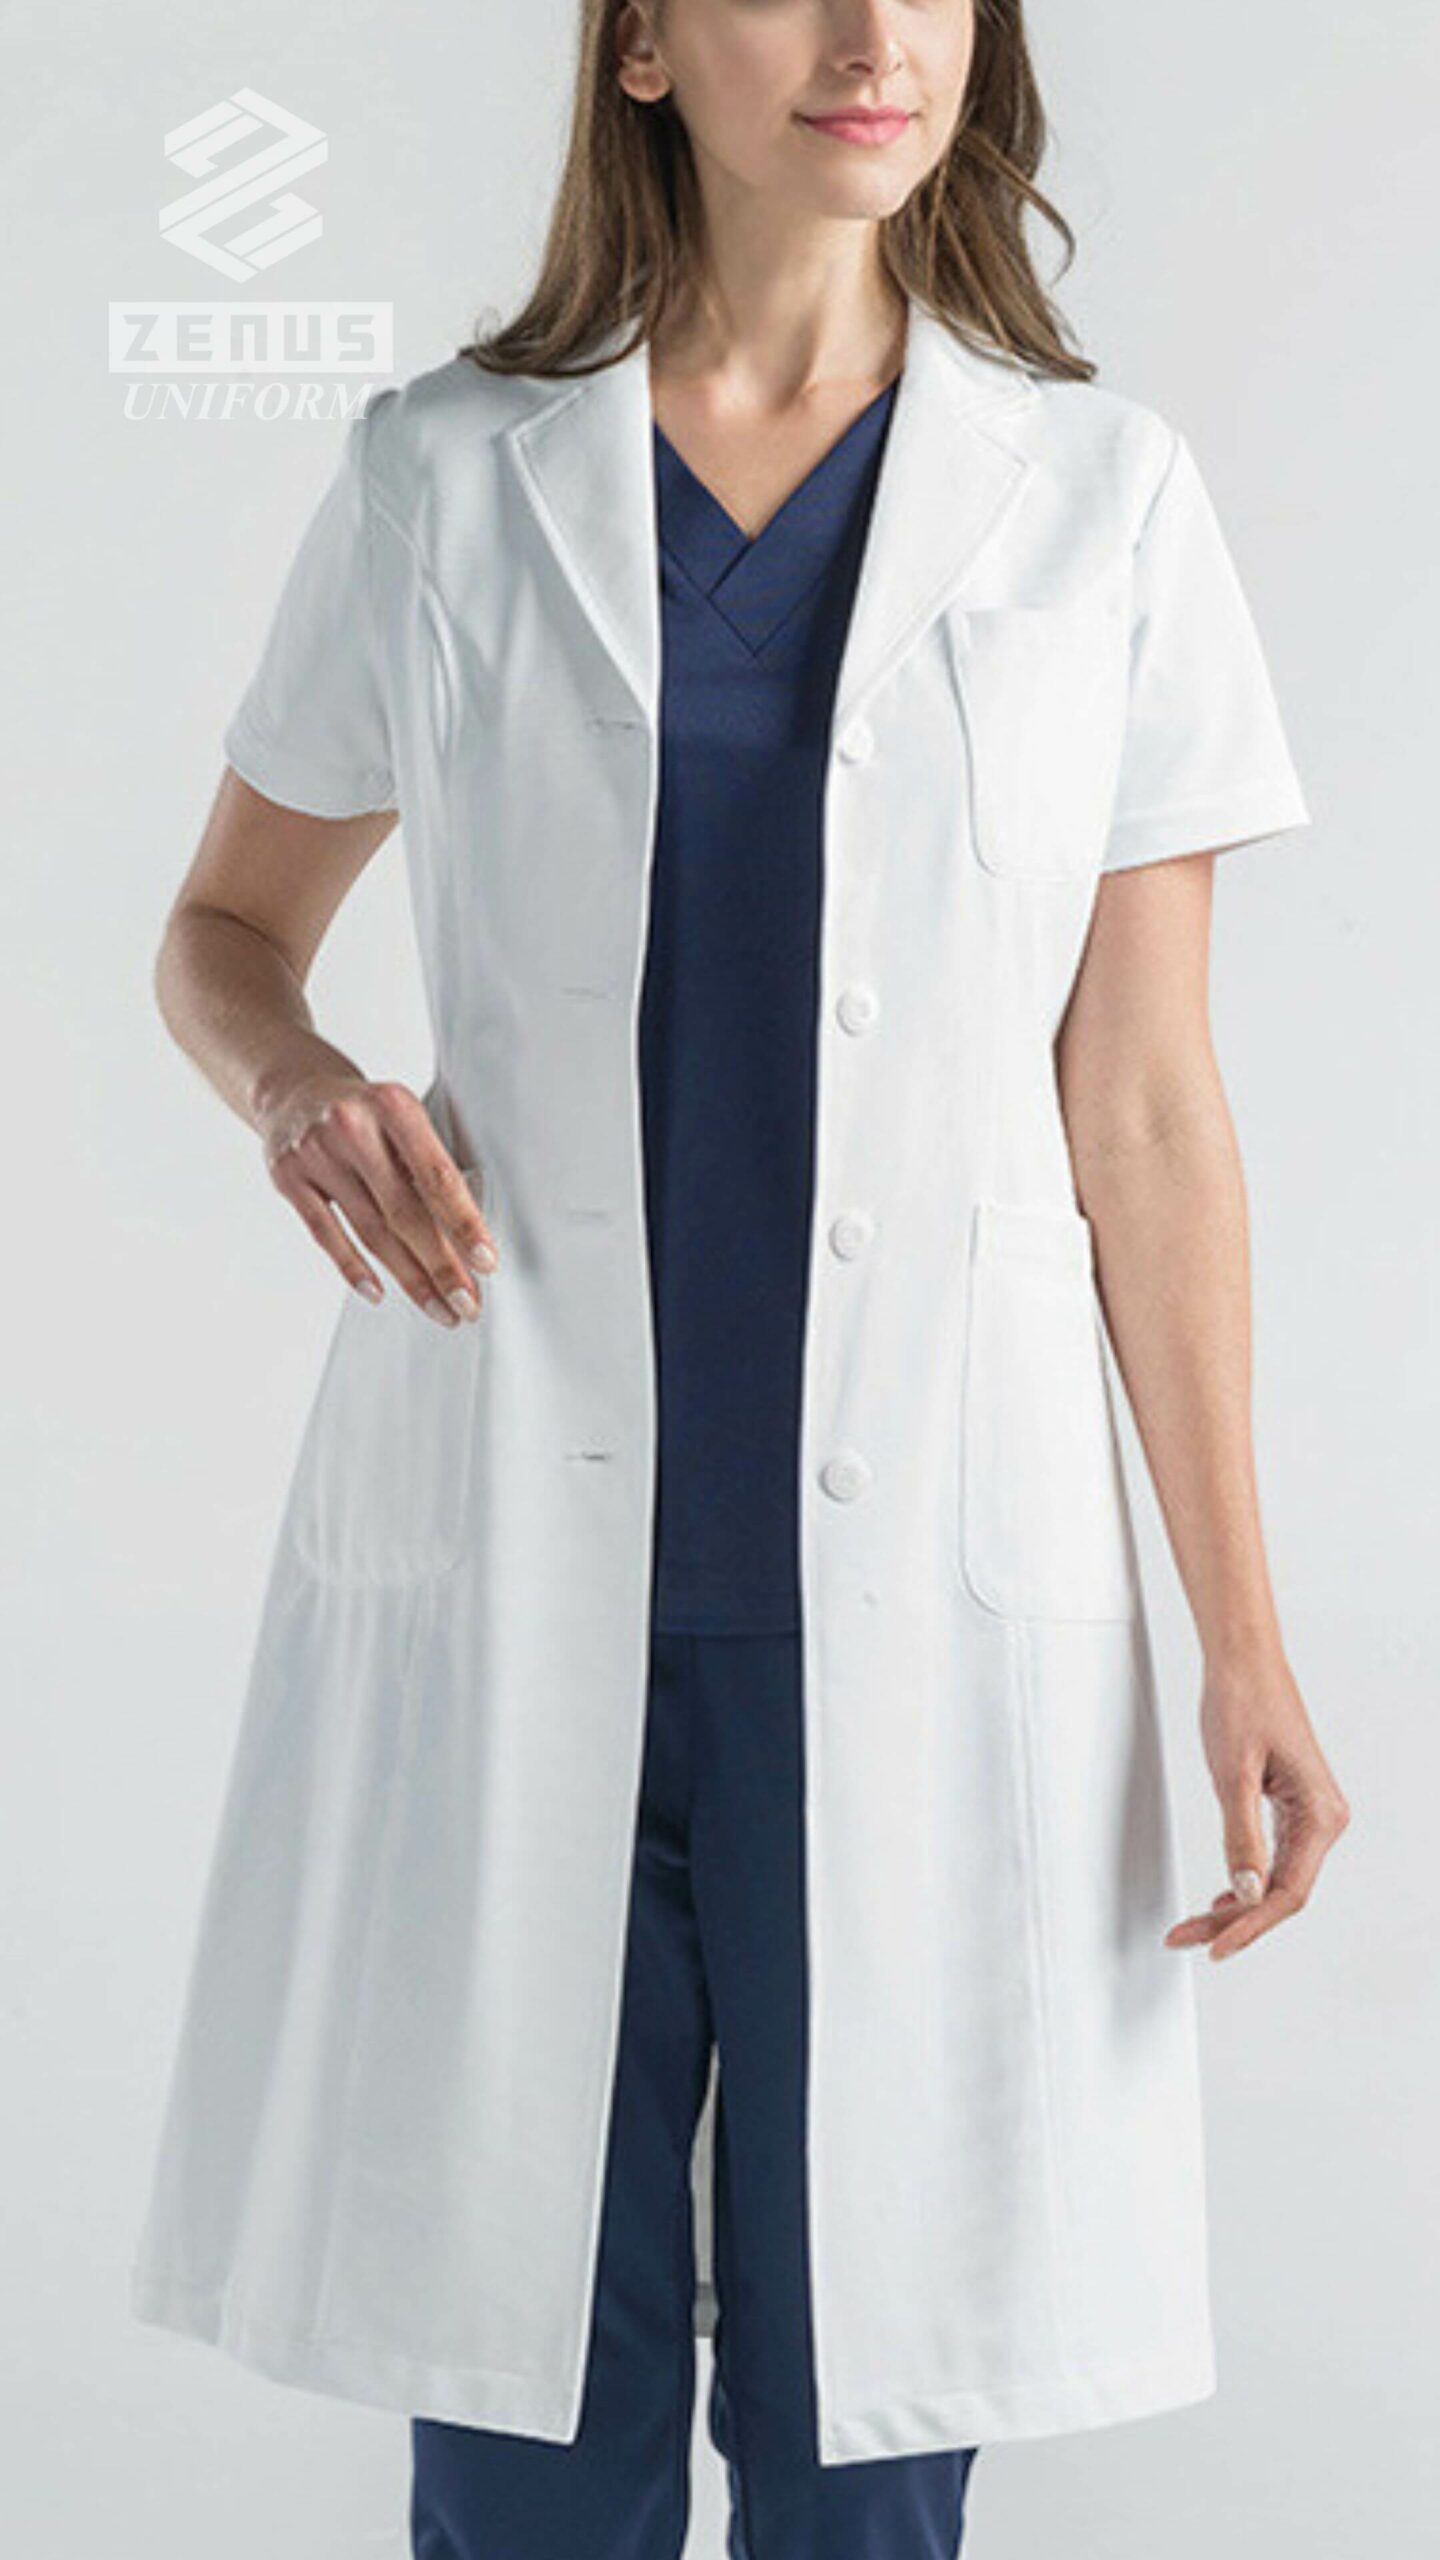 醫生袍, 醫師袍, Zenus Uniform 醫生衫 -pic004